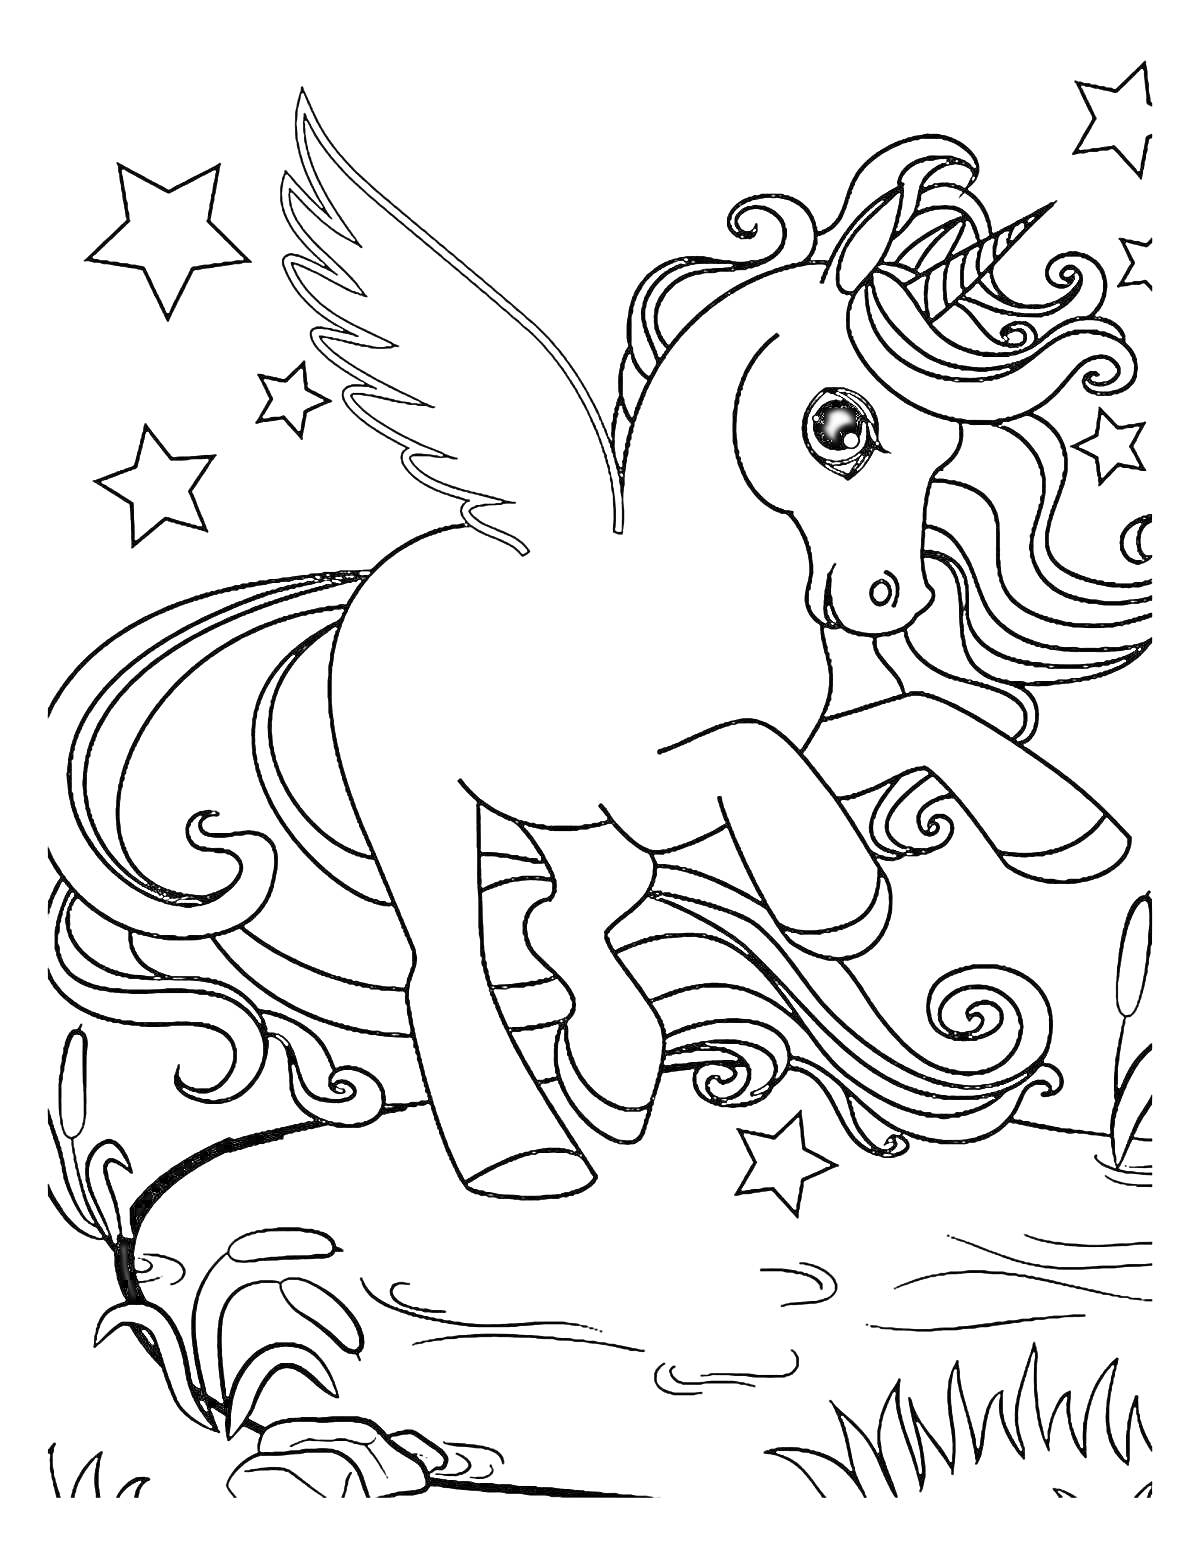 Раскраска Единорожка c крыльями, звёзды и растительность на фоне